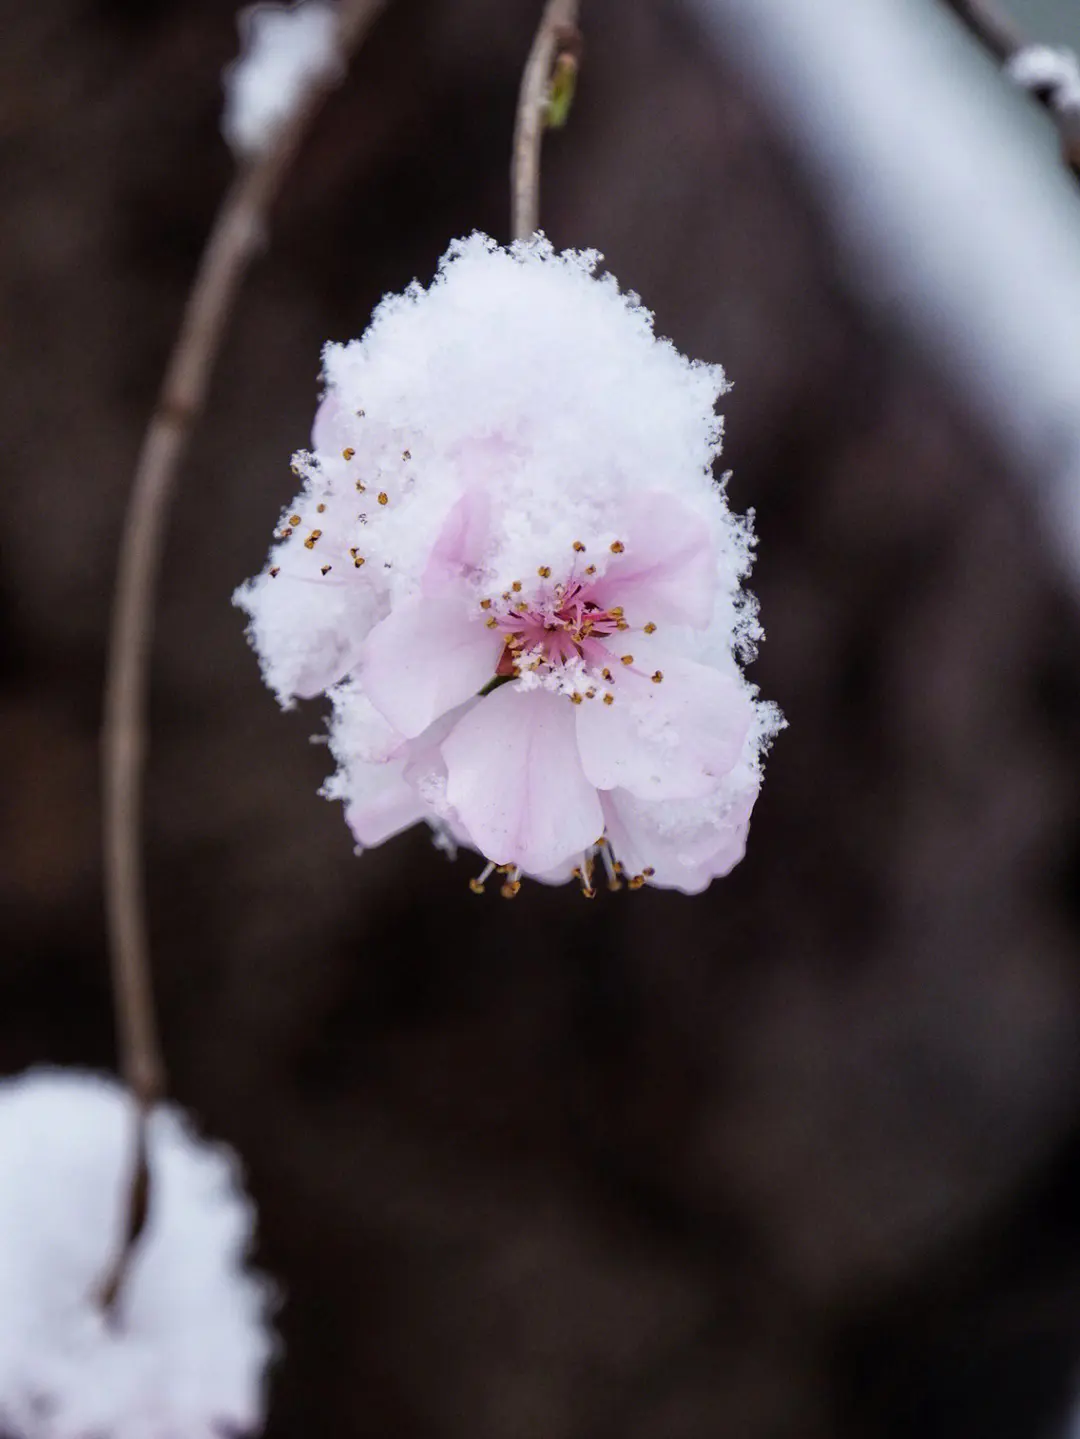 好看的冬日花卉图片欣赏大全 冬季花卉植物真实